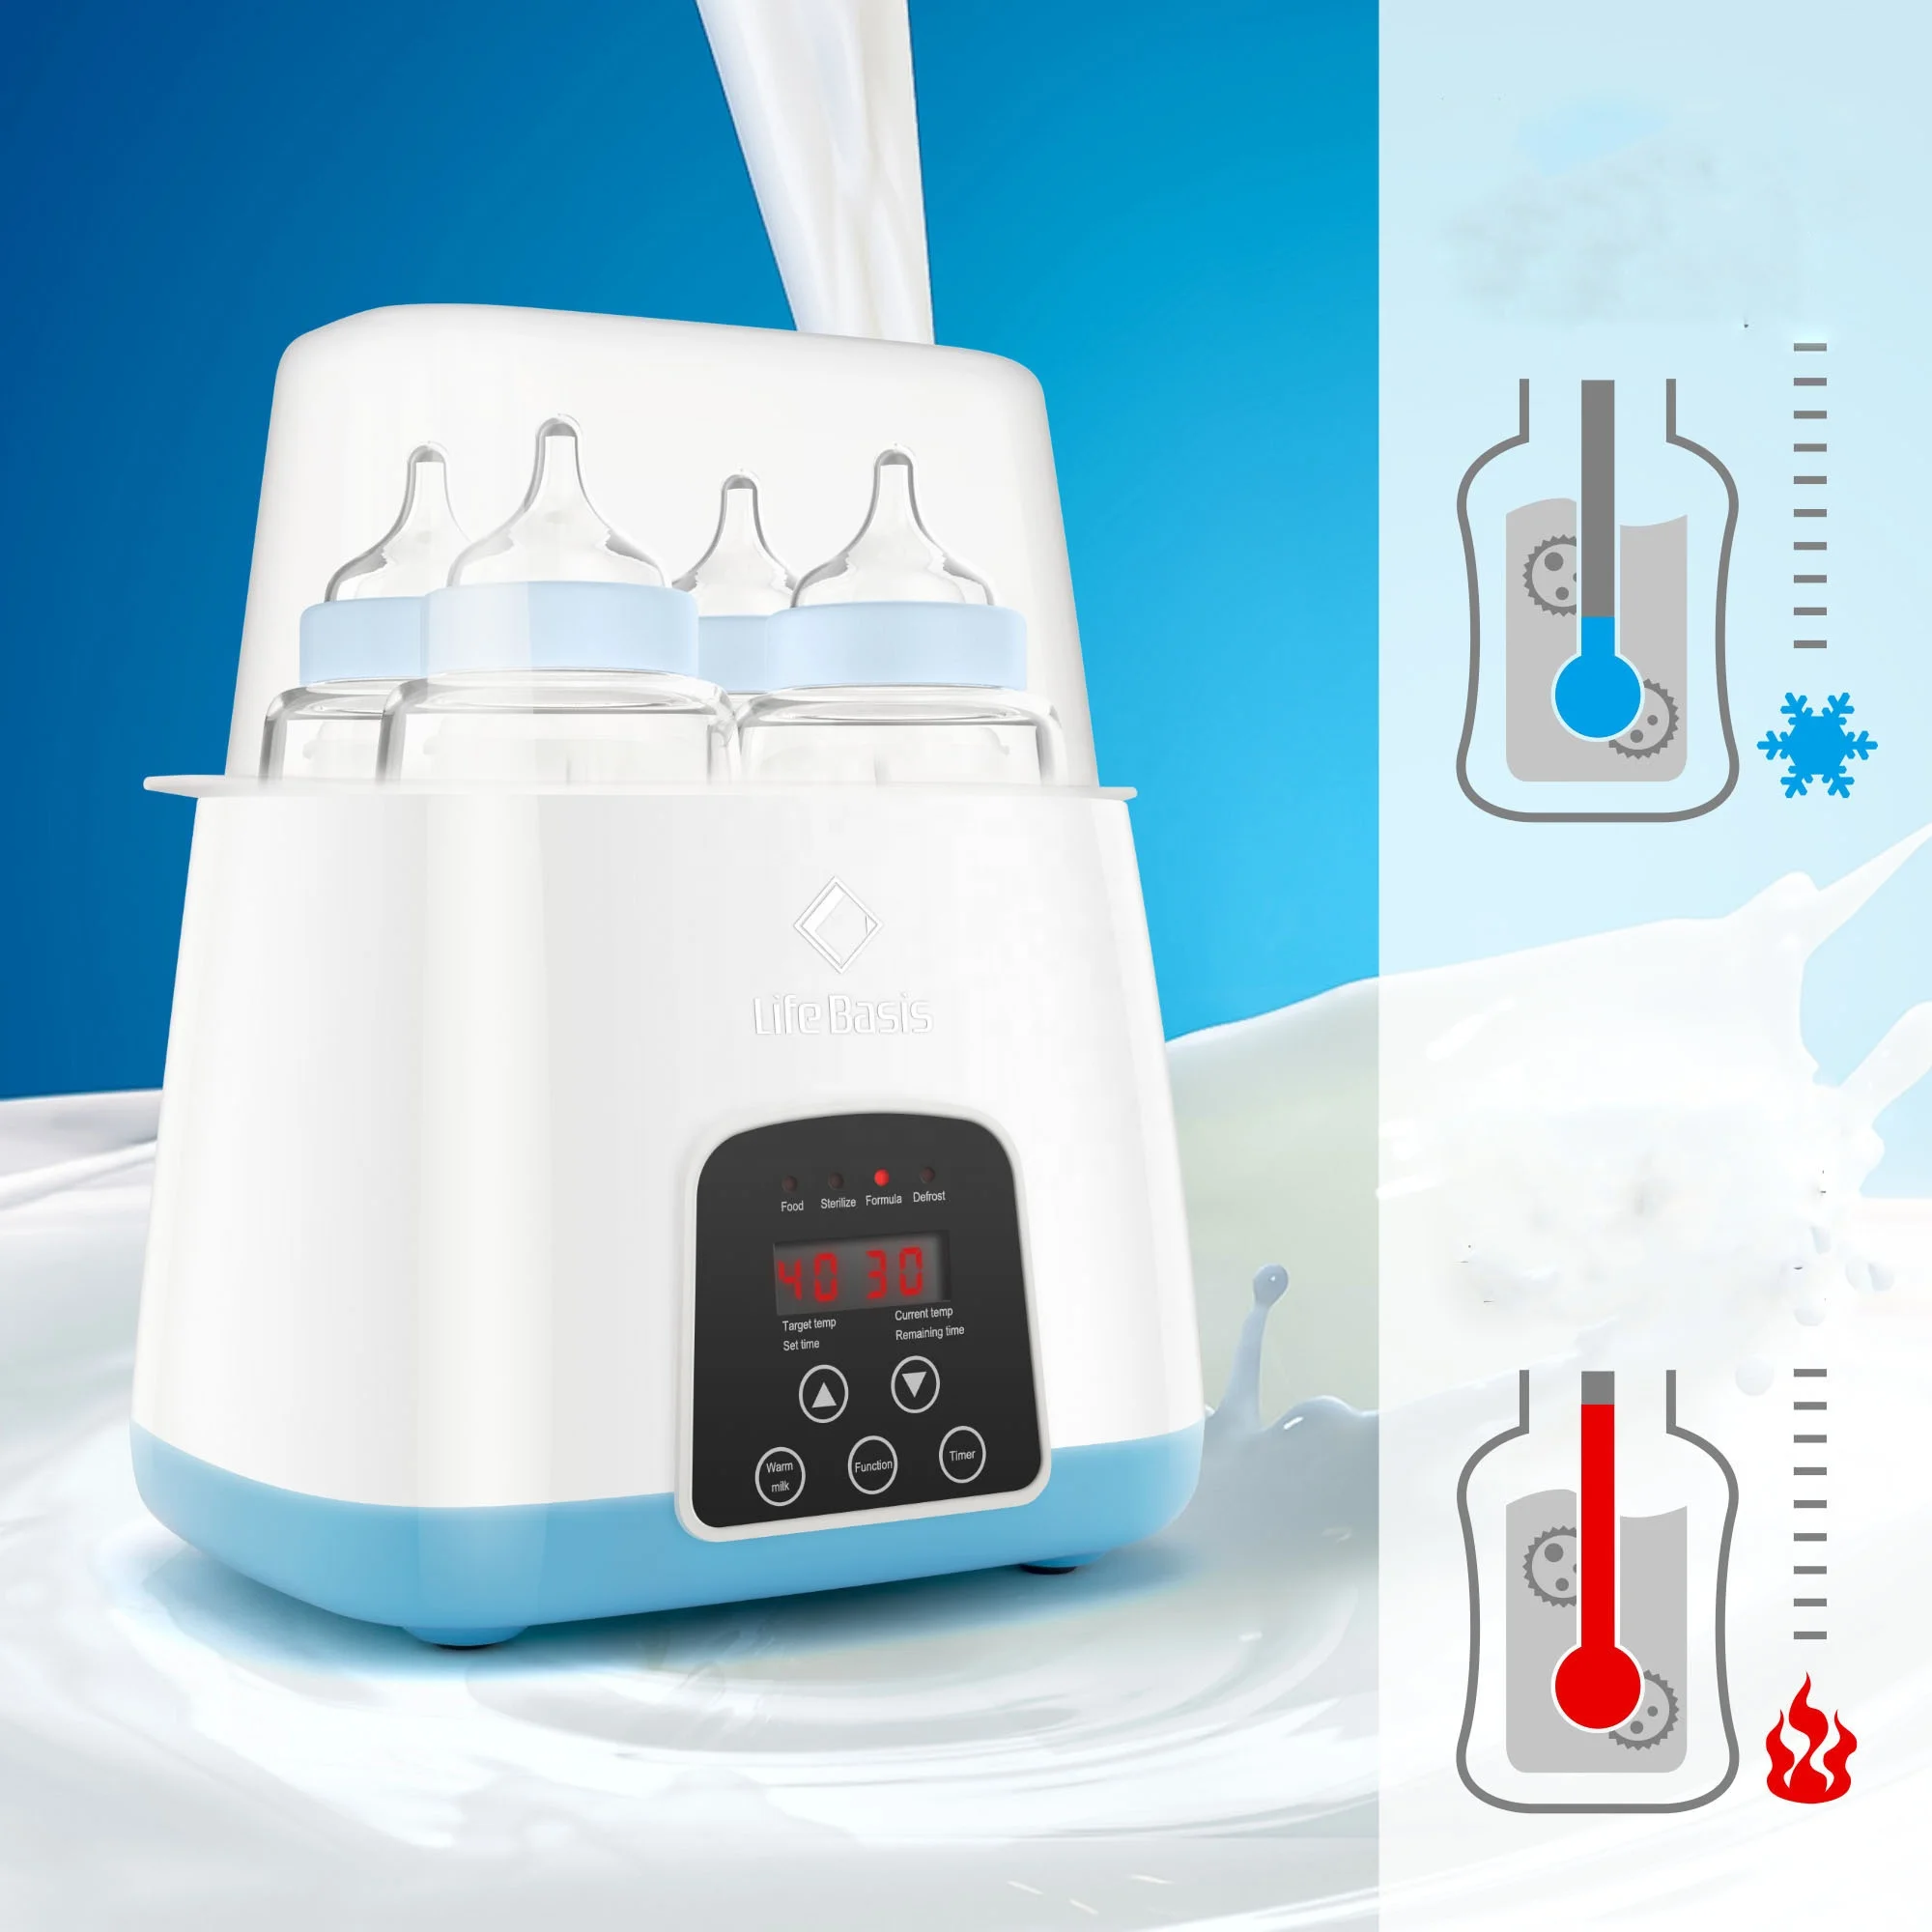 LCD touch screen digital steam fast heating milk warmer double baby breastfeeding bottle warmer